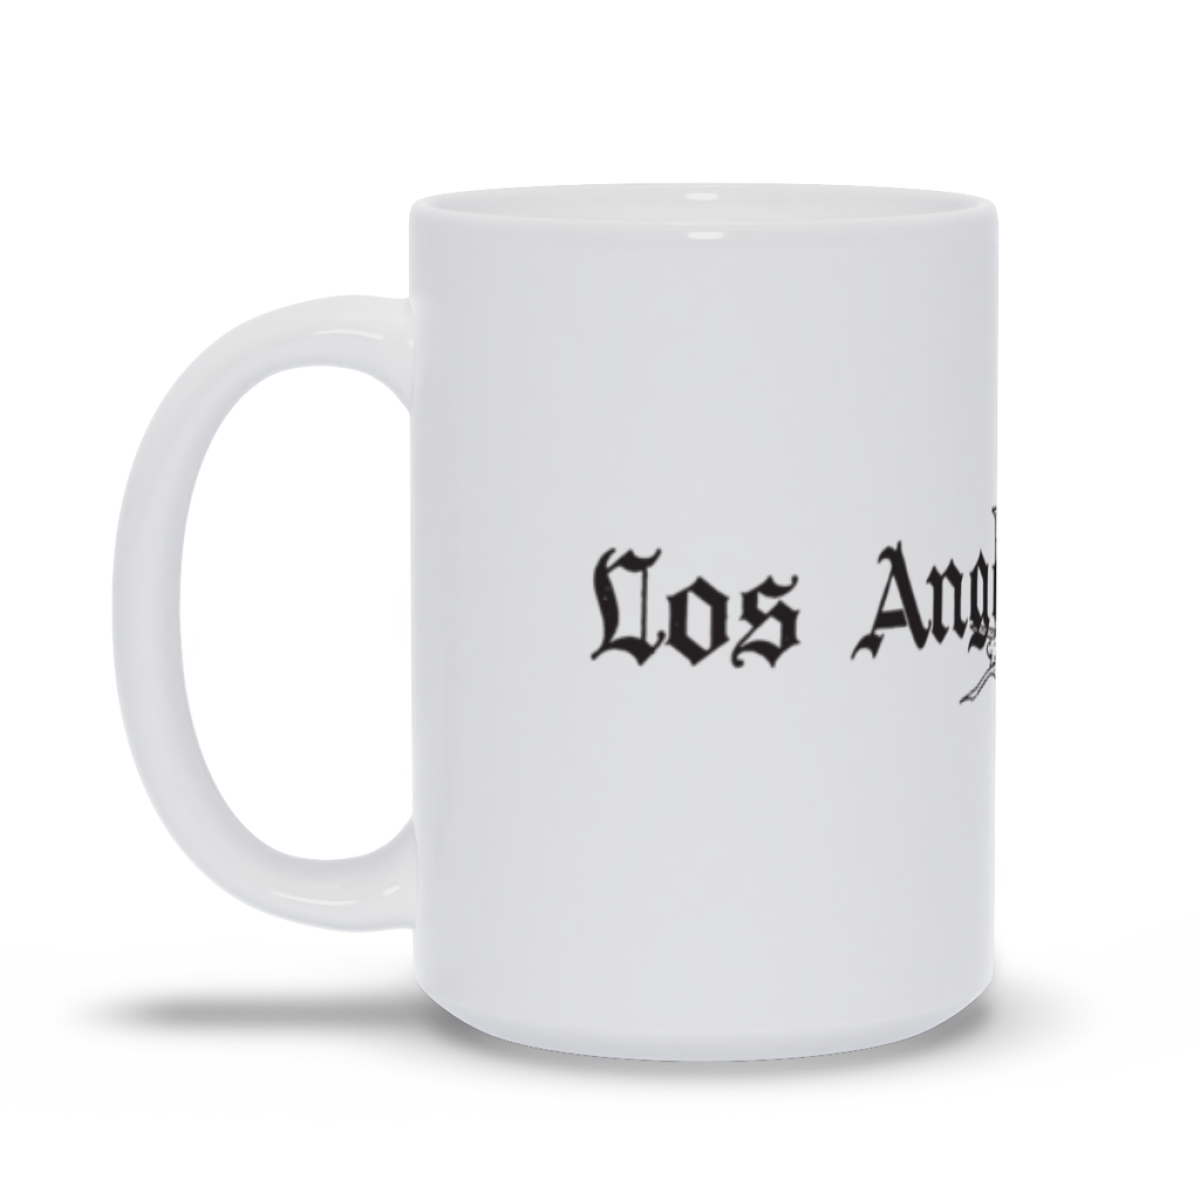 Los Angeles Times coffee mug.